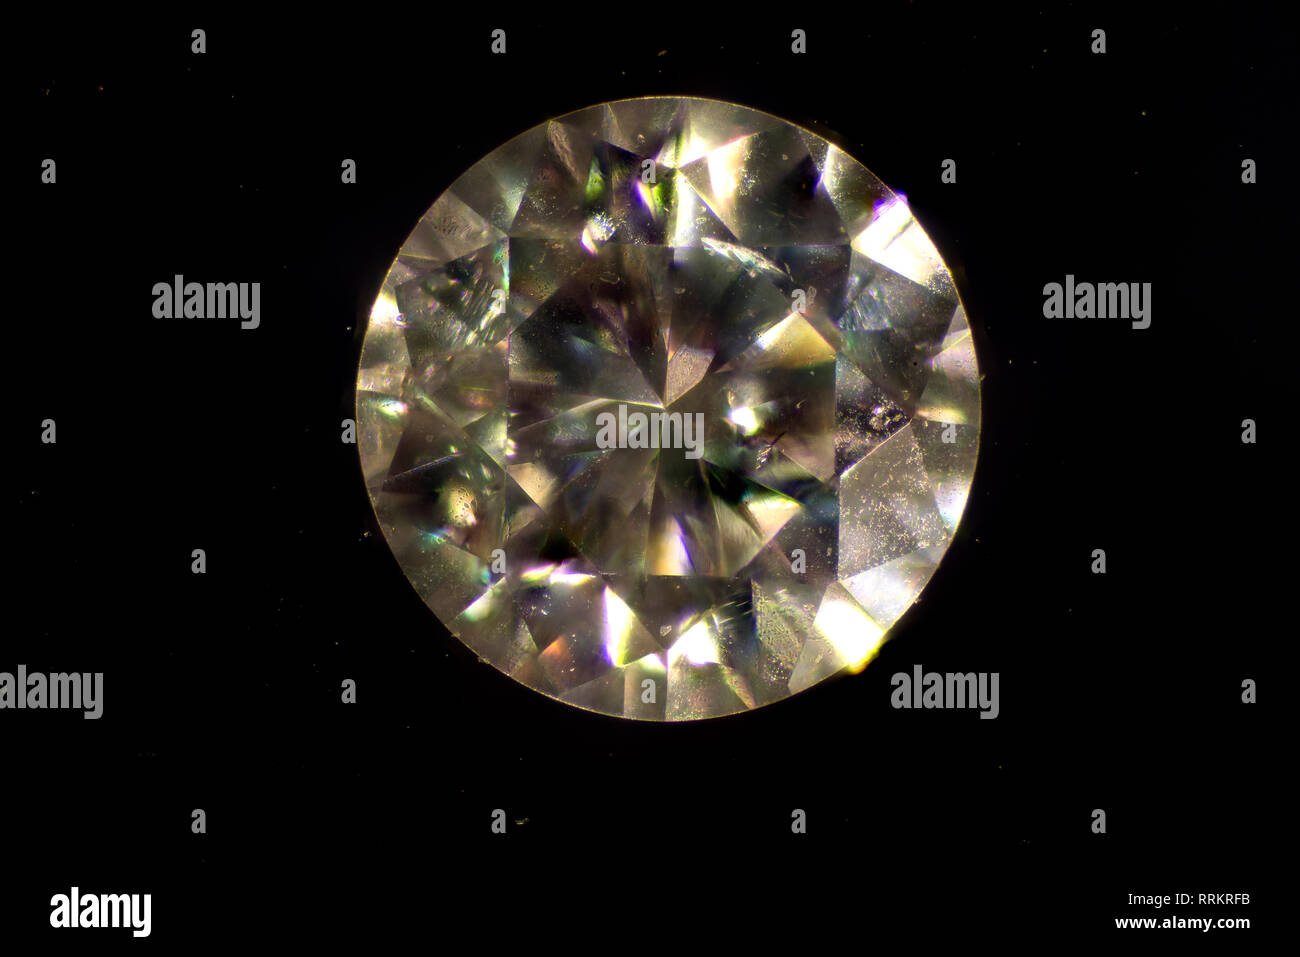 Imagen microscópica. El Diamante es una forma sólida del elemento con sus átomos de carbono dispuestos en una estructura cristalina denominada diamond cubic. Foto de stock